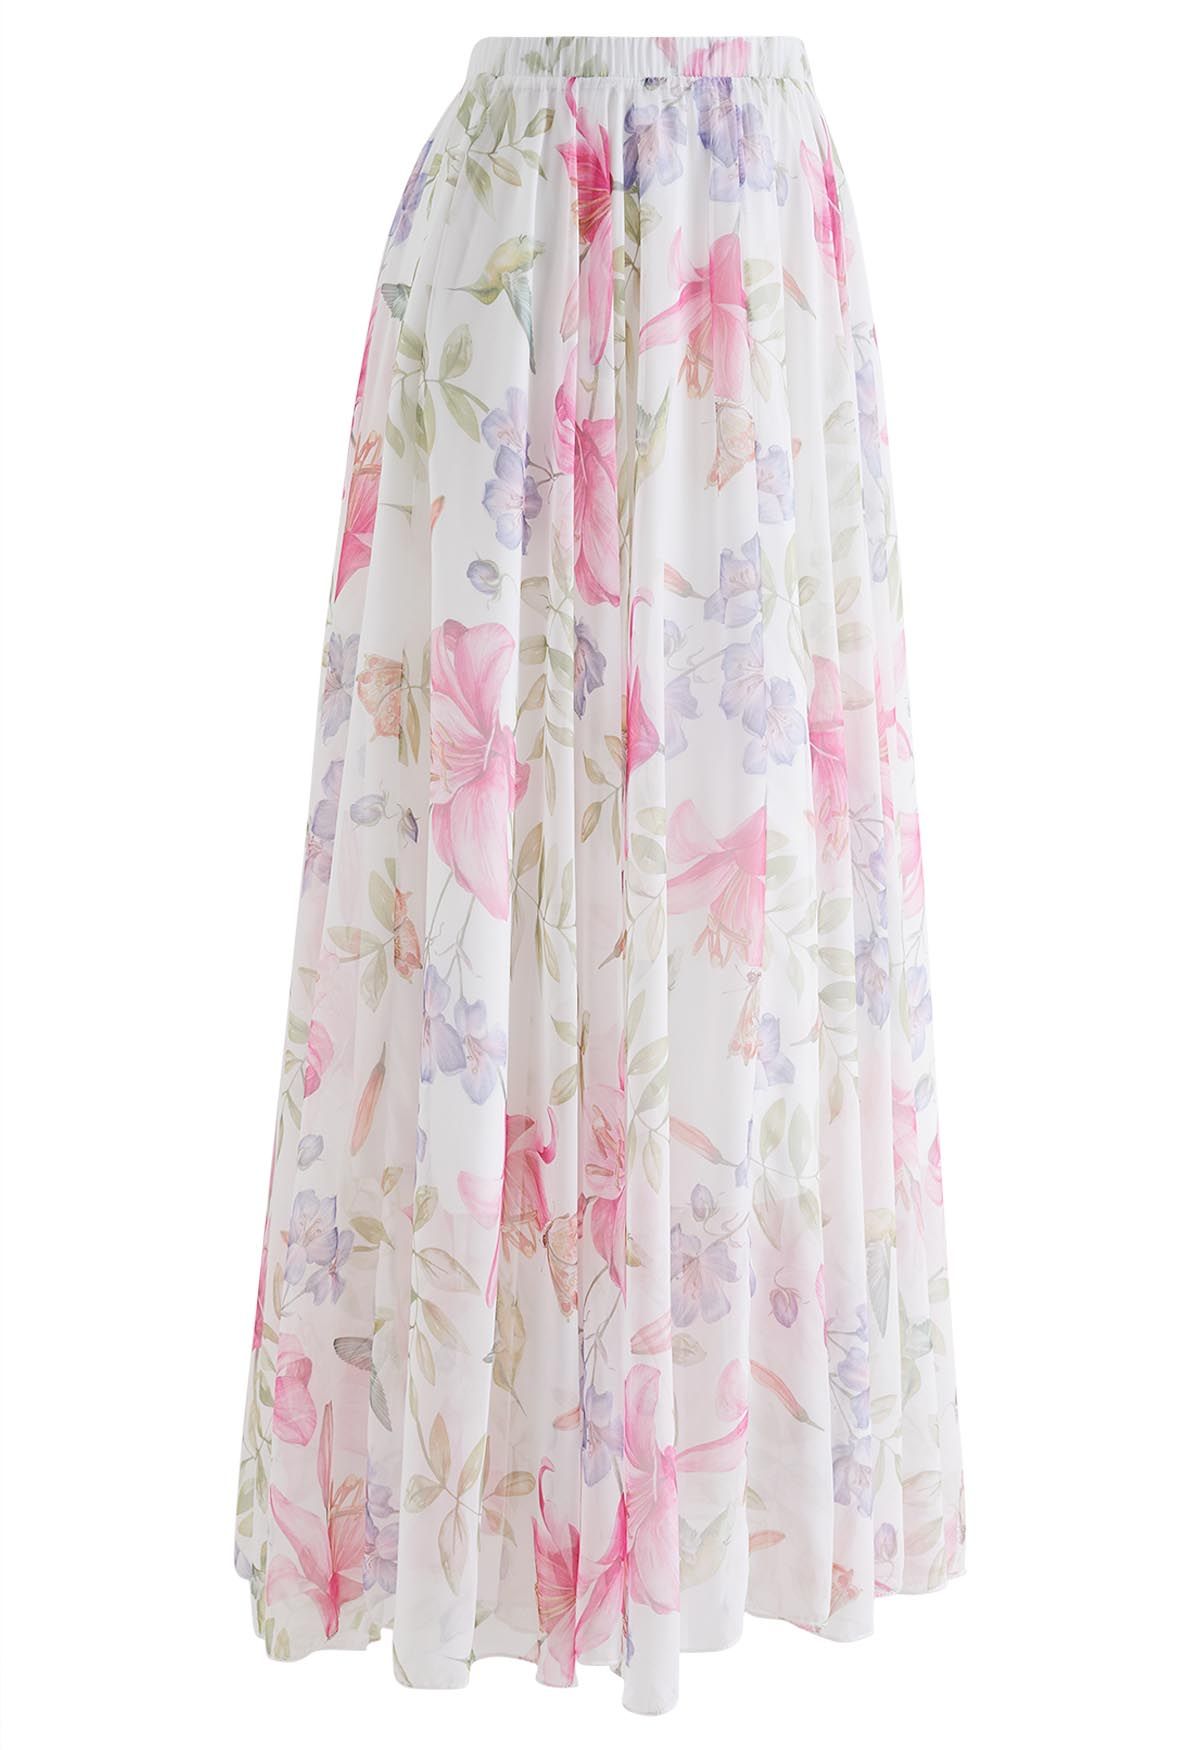 Vernal Garden Printed Chiffon Maxi Skirt